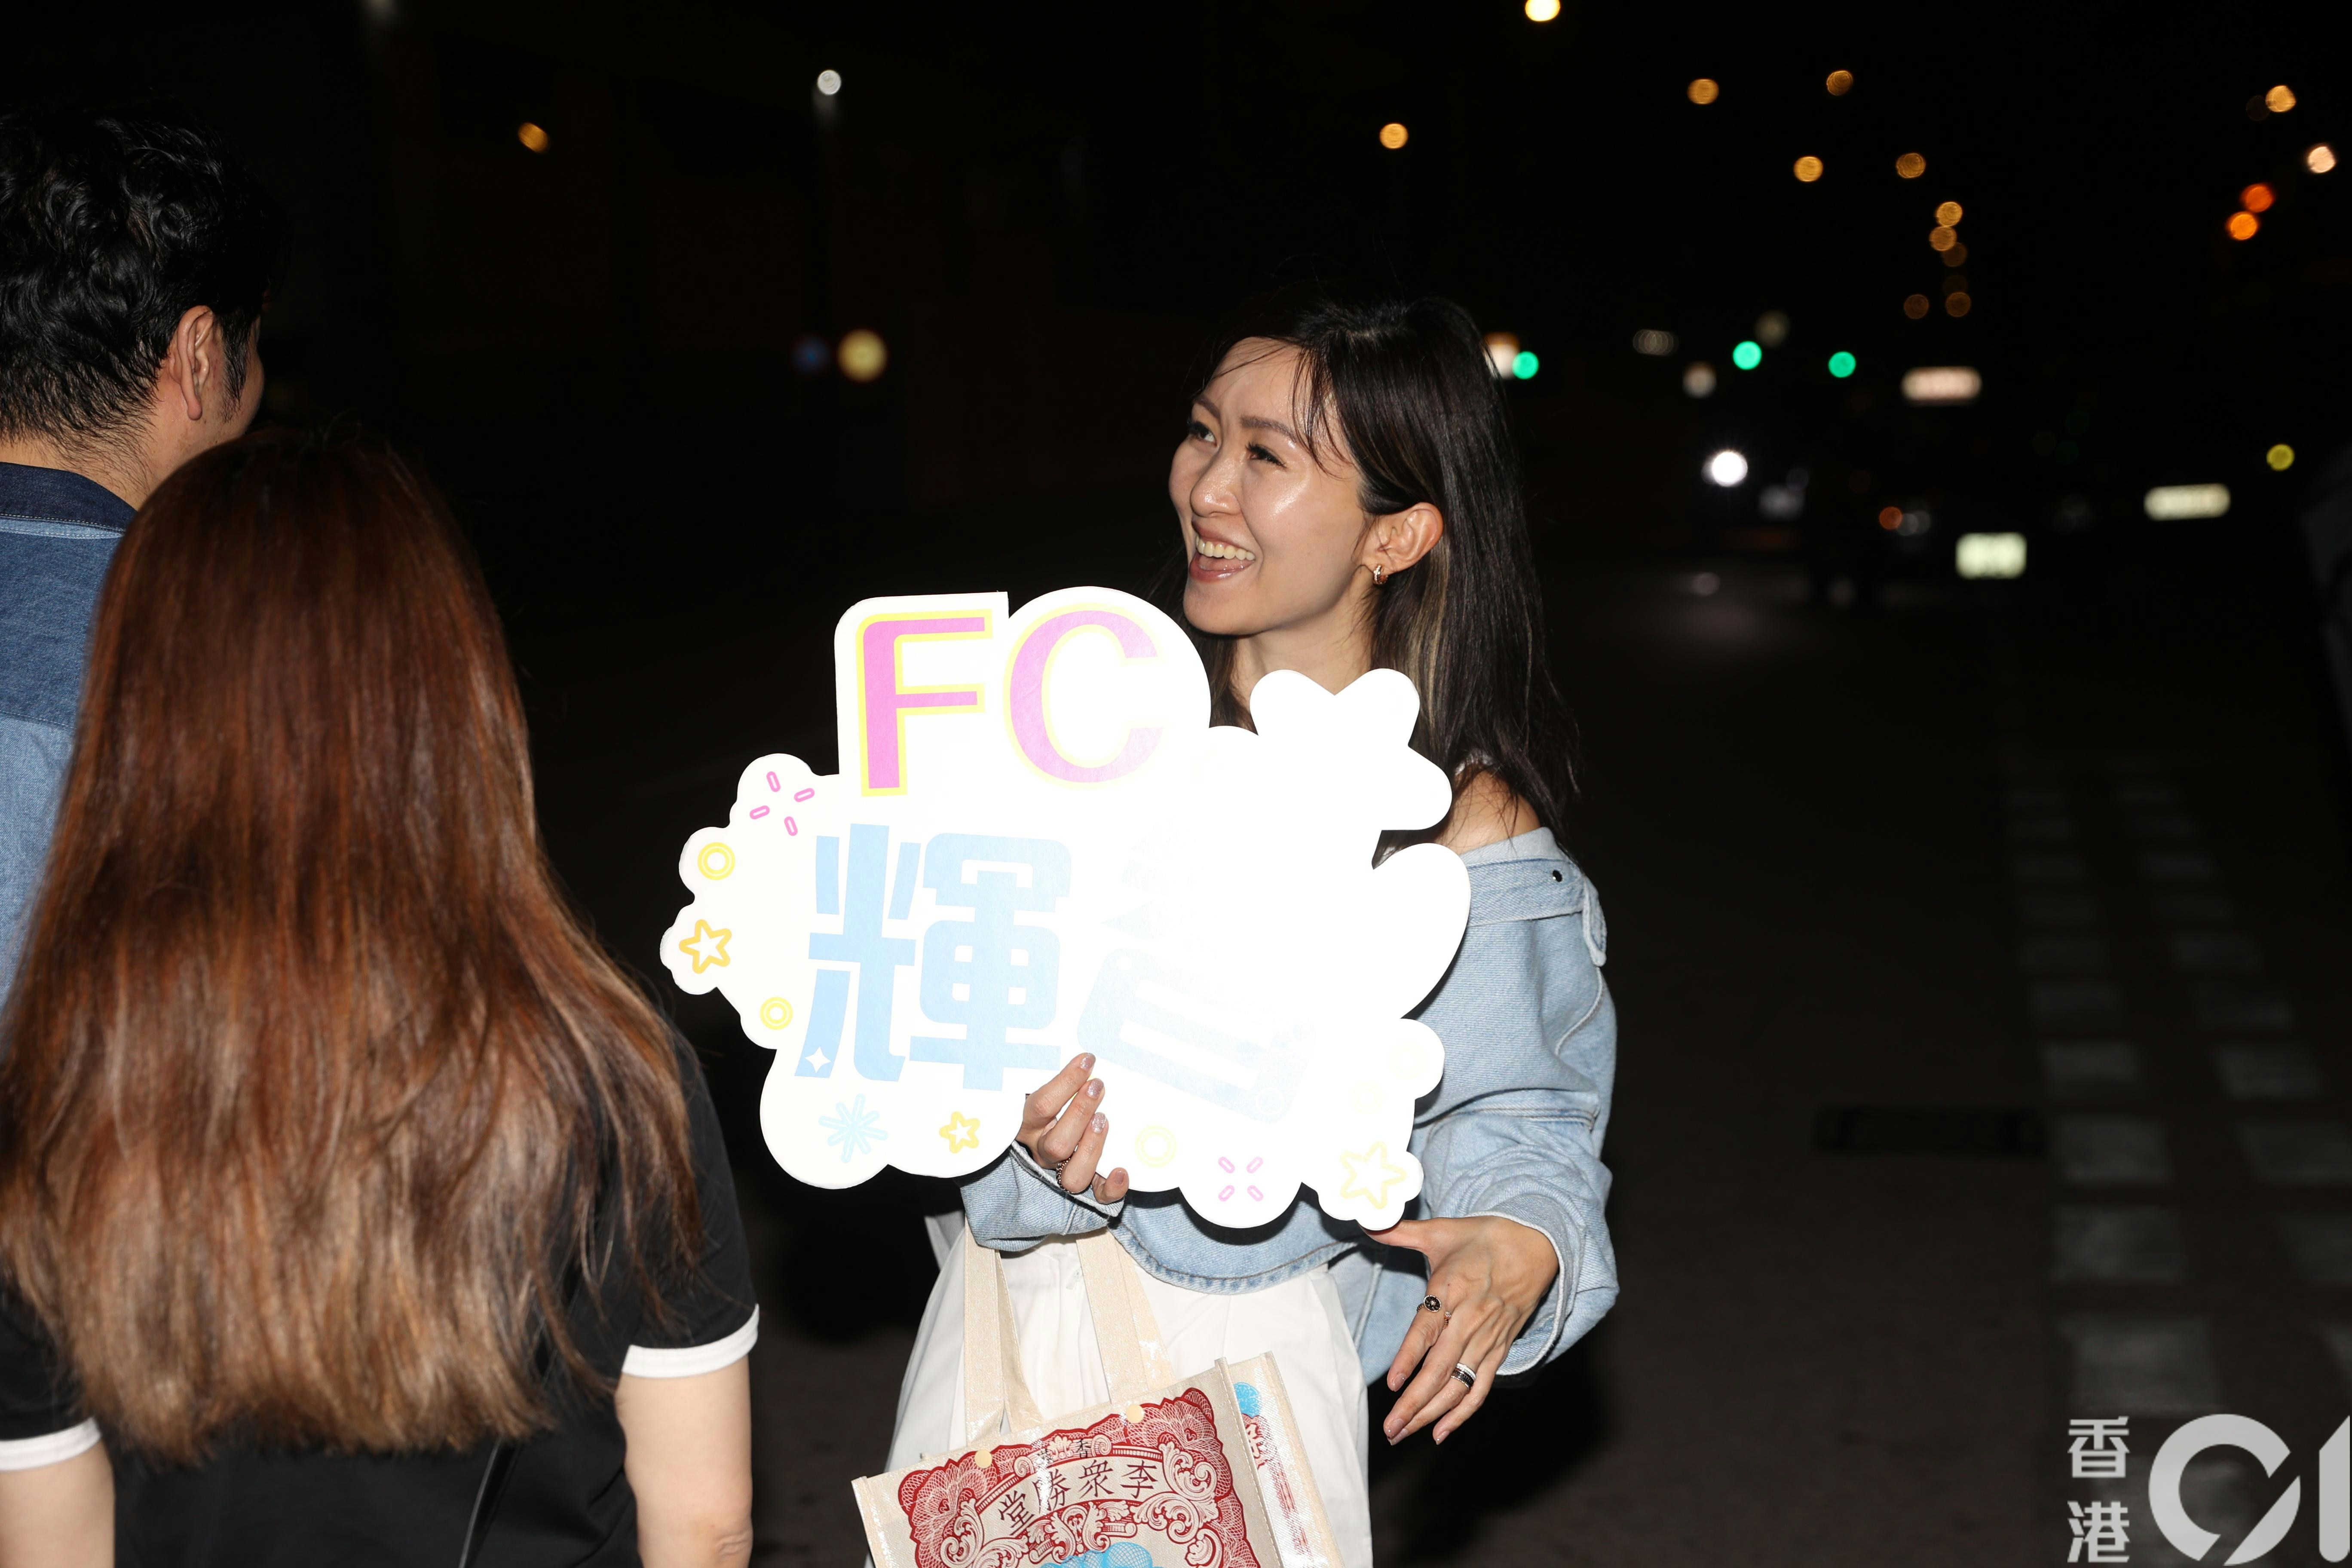 谭辉智的妹妹更接受《香港01》的独家访问。(陈顺祯 摄)